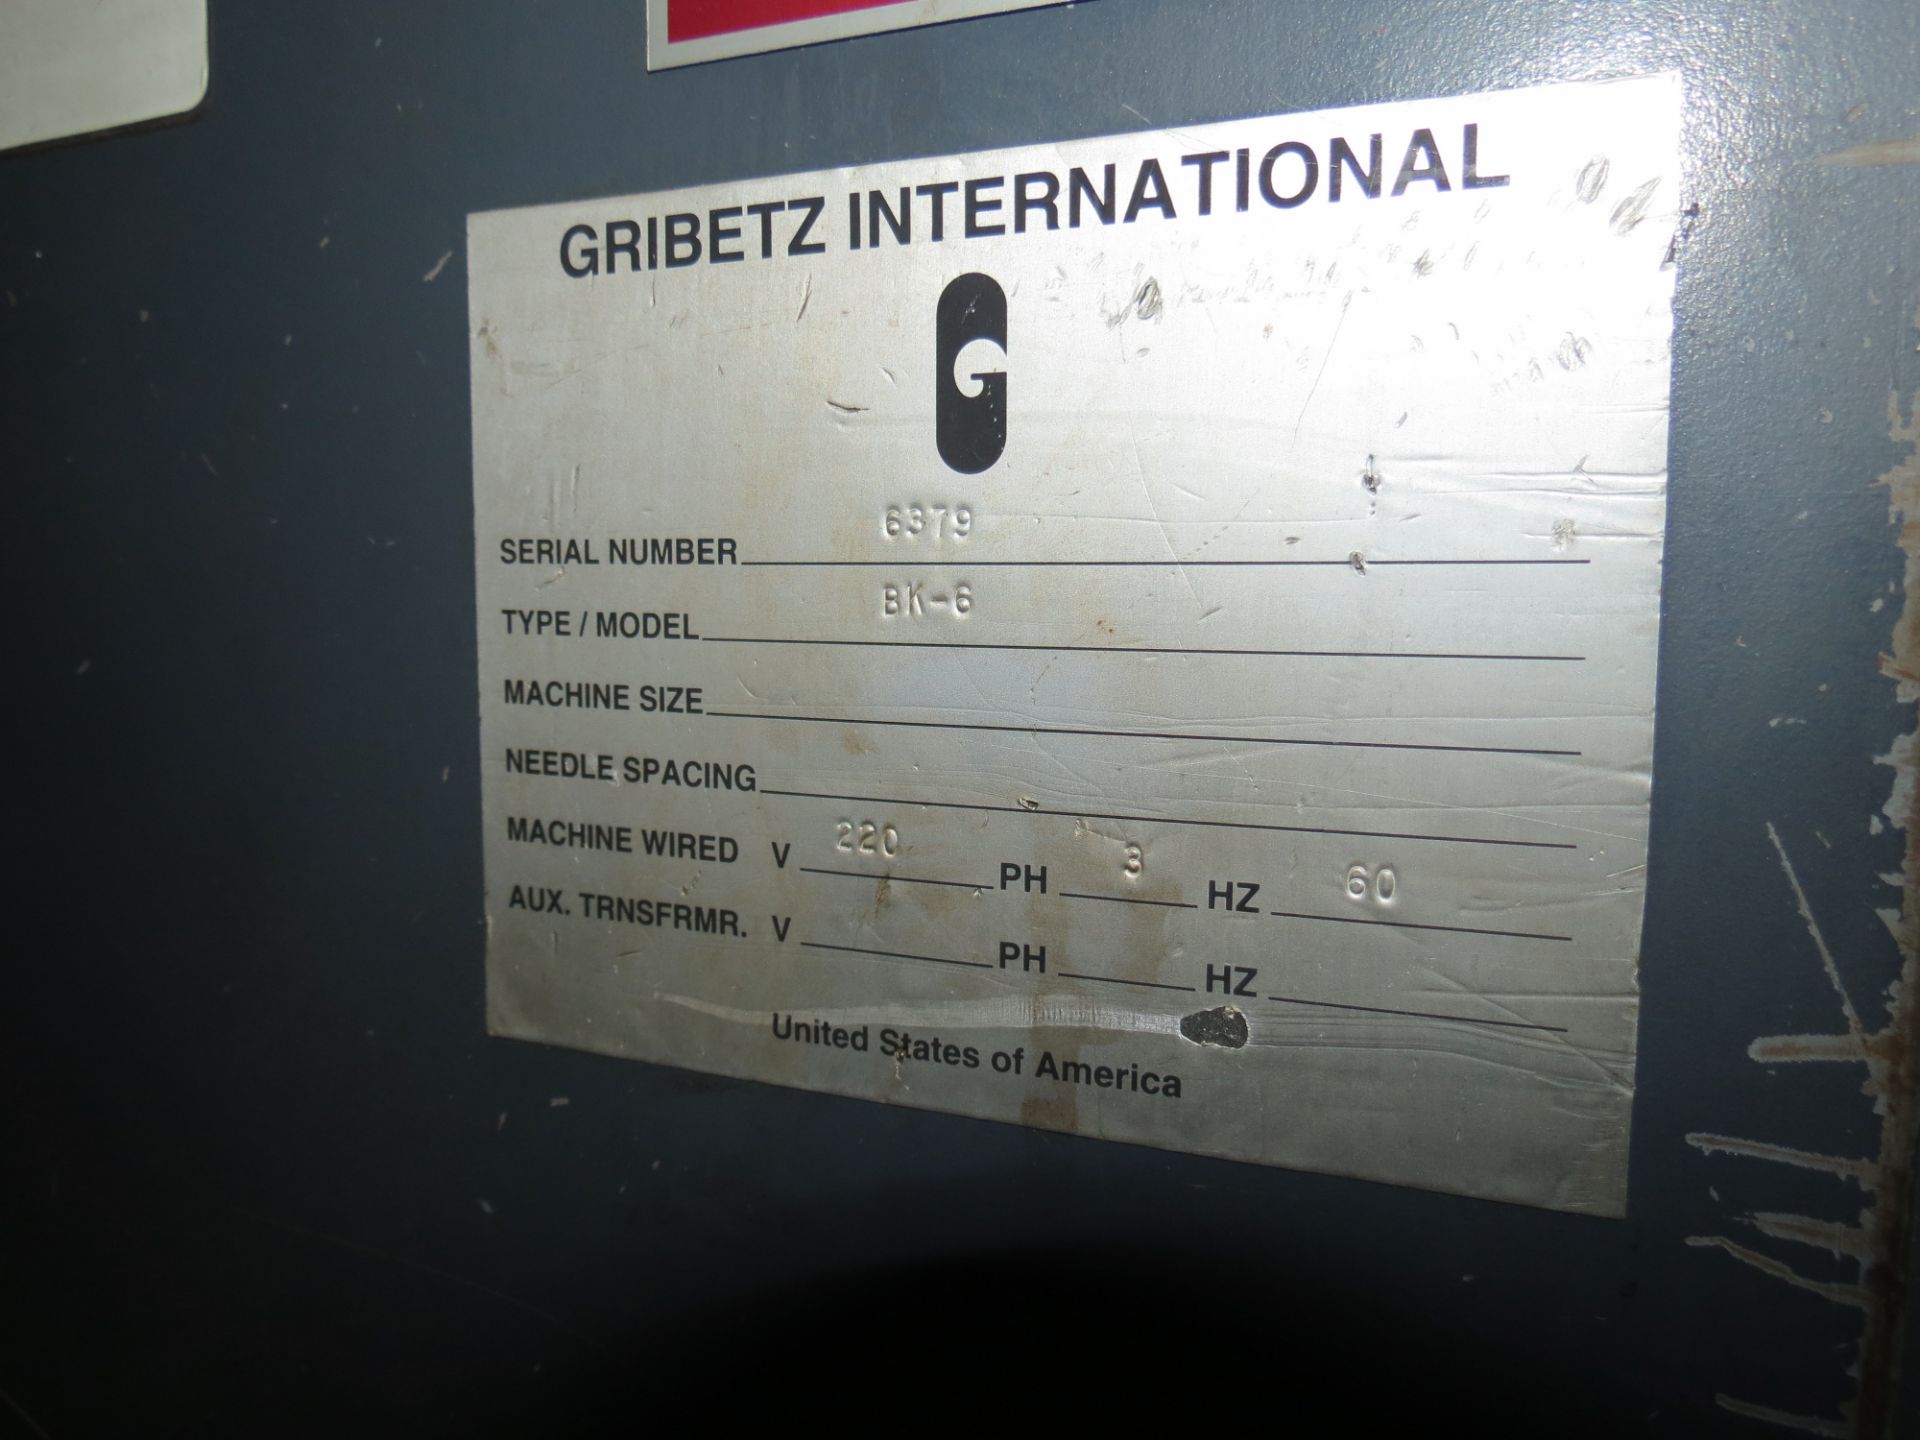 Gribetz International BK-6 Screw Driven Bale Opener, 220V, SN:6379 - Image 4 of 4